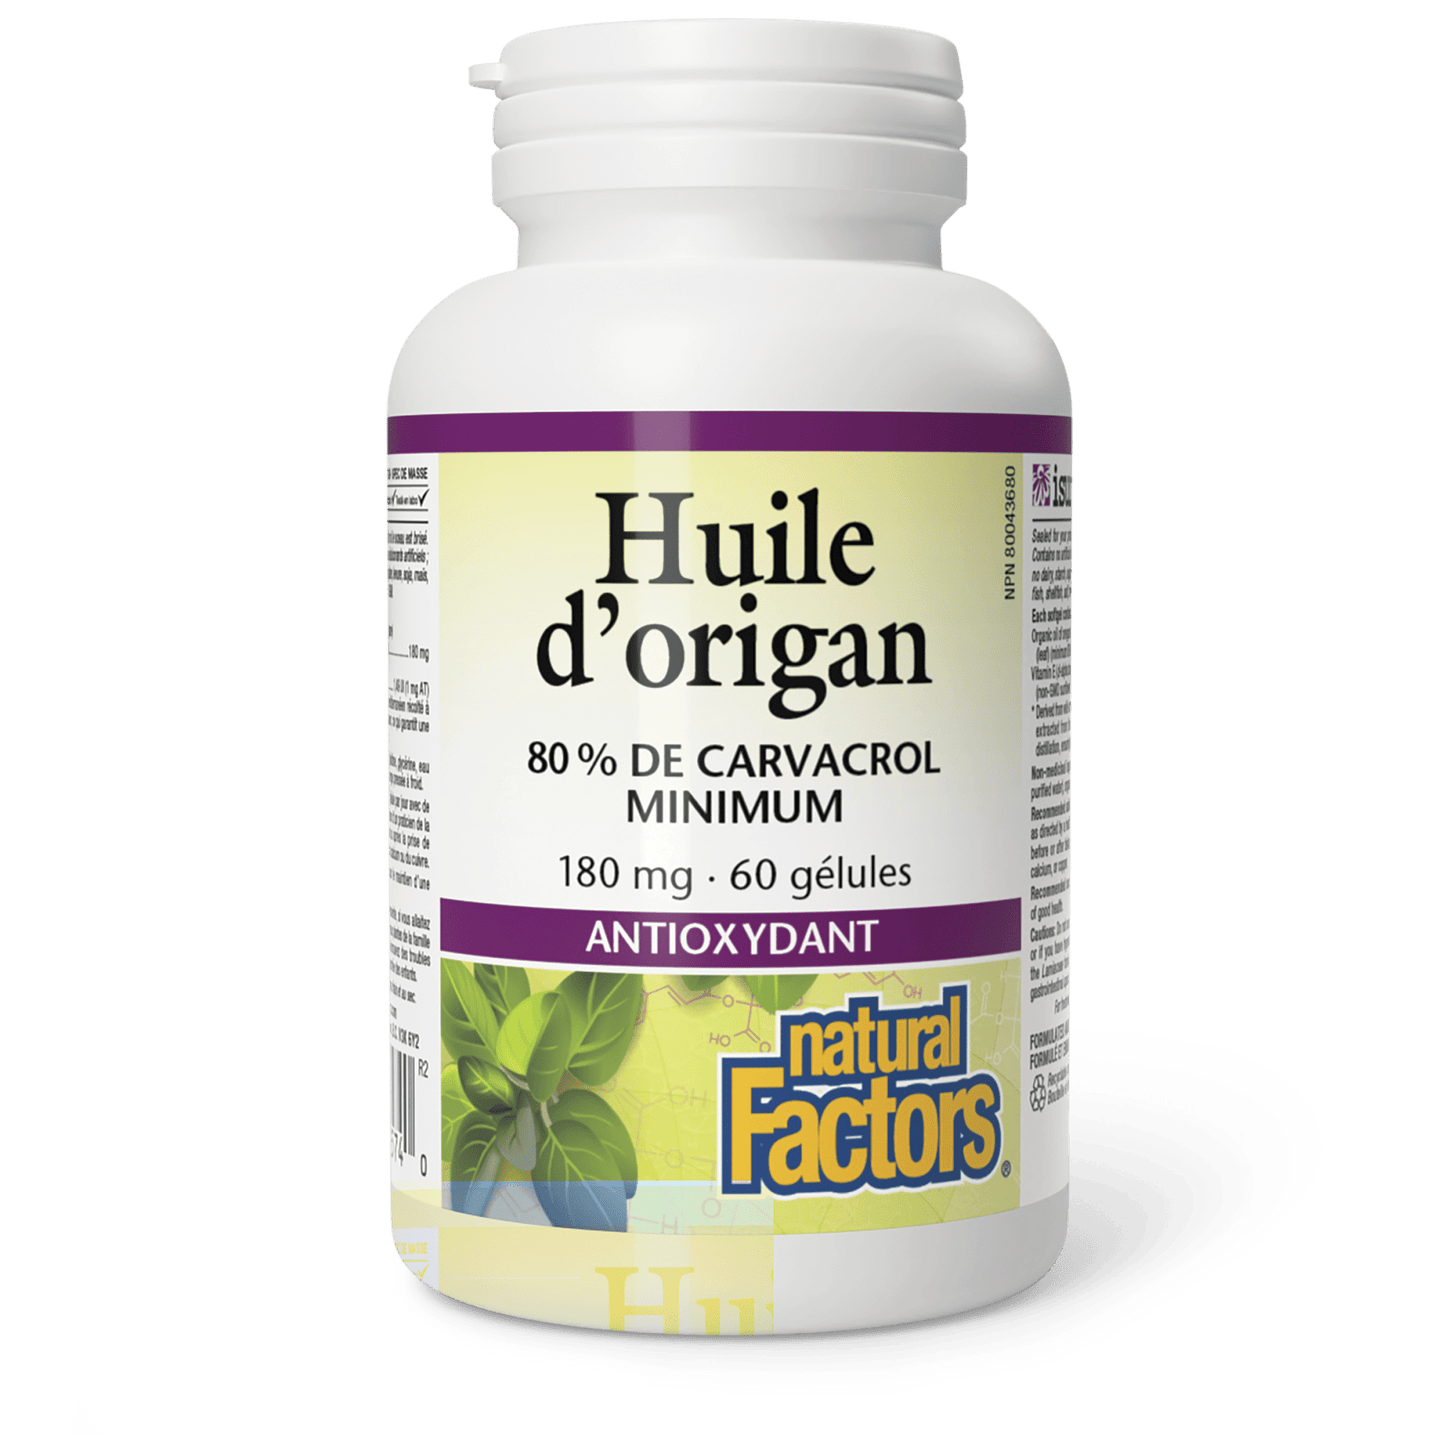 Huile d’origan 180 mg, Natural Factors|v|image|4574